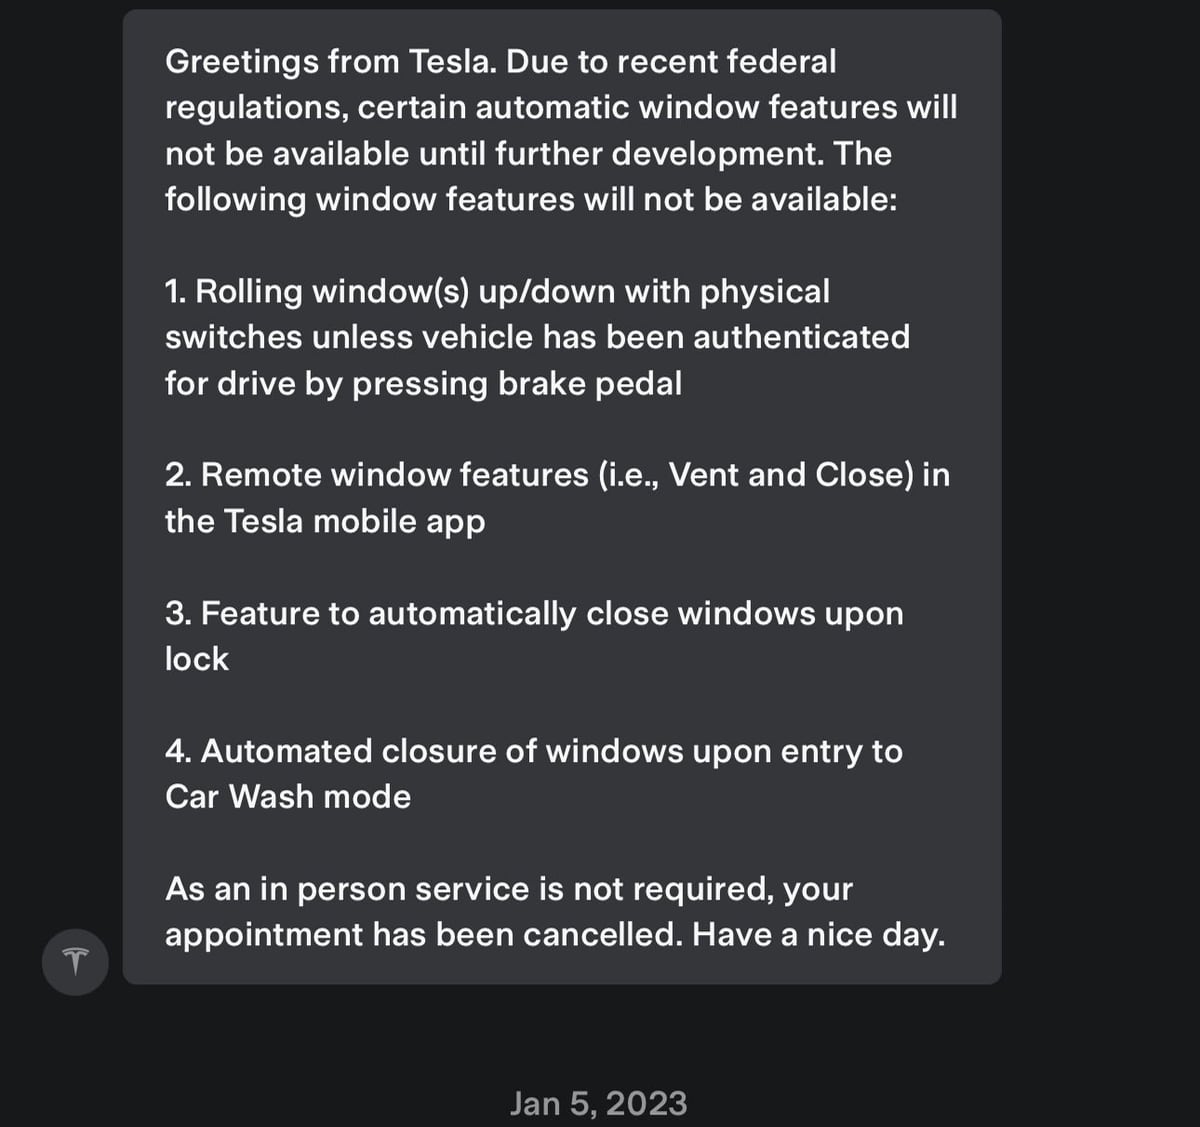 L'assistenza Tesla ha risposto a @Tommyf902 in merito alla mancata disponibilità della funzione di chiusura automatica della finestra